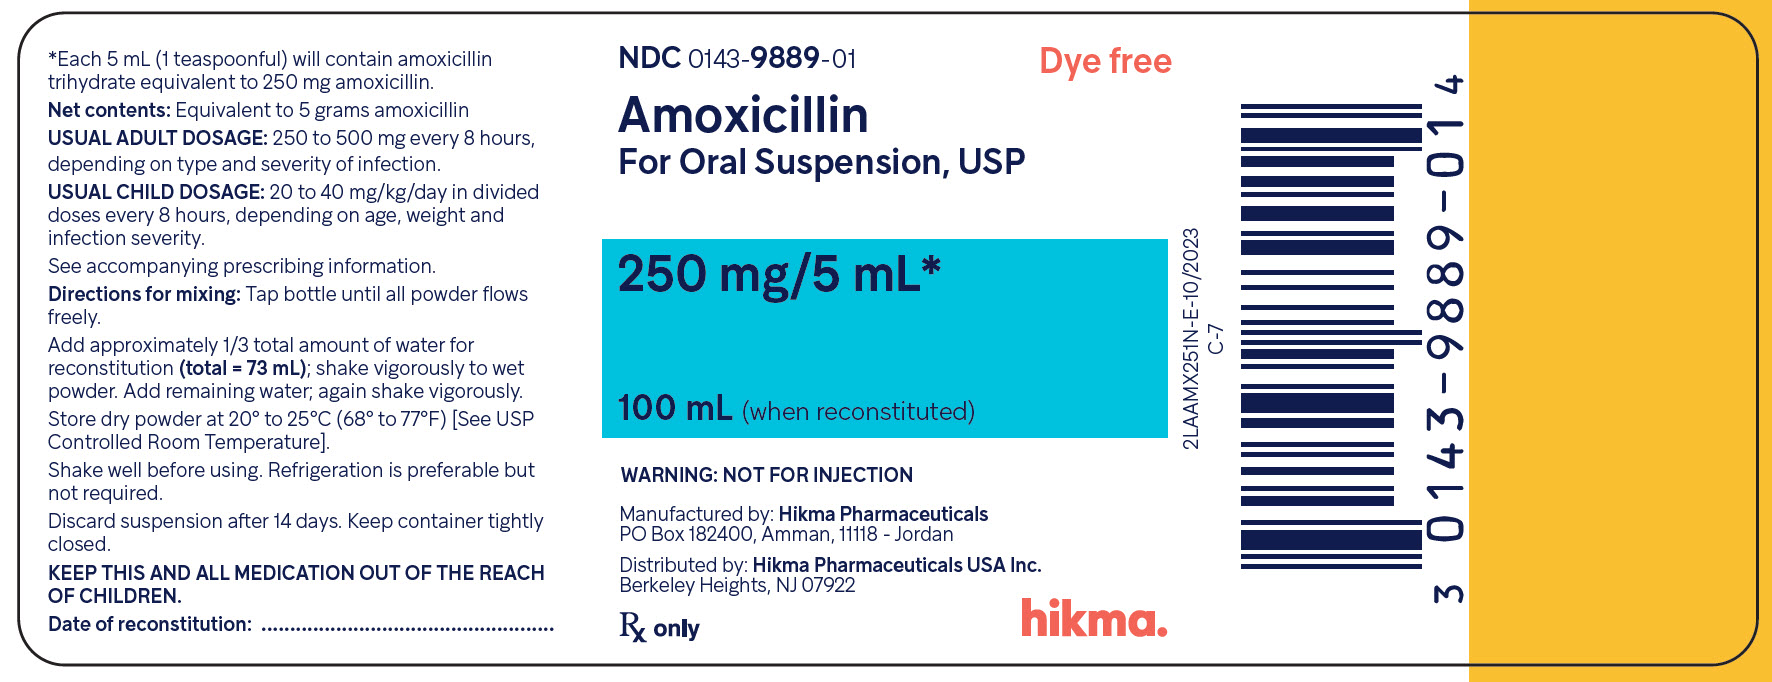 Amoxicillin OS 250 mg/5 mL (100 mL) bottle label image